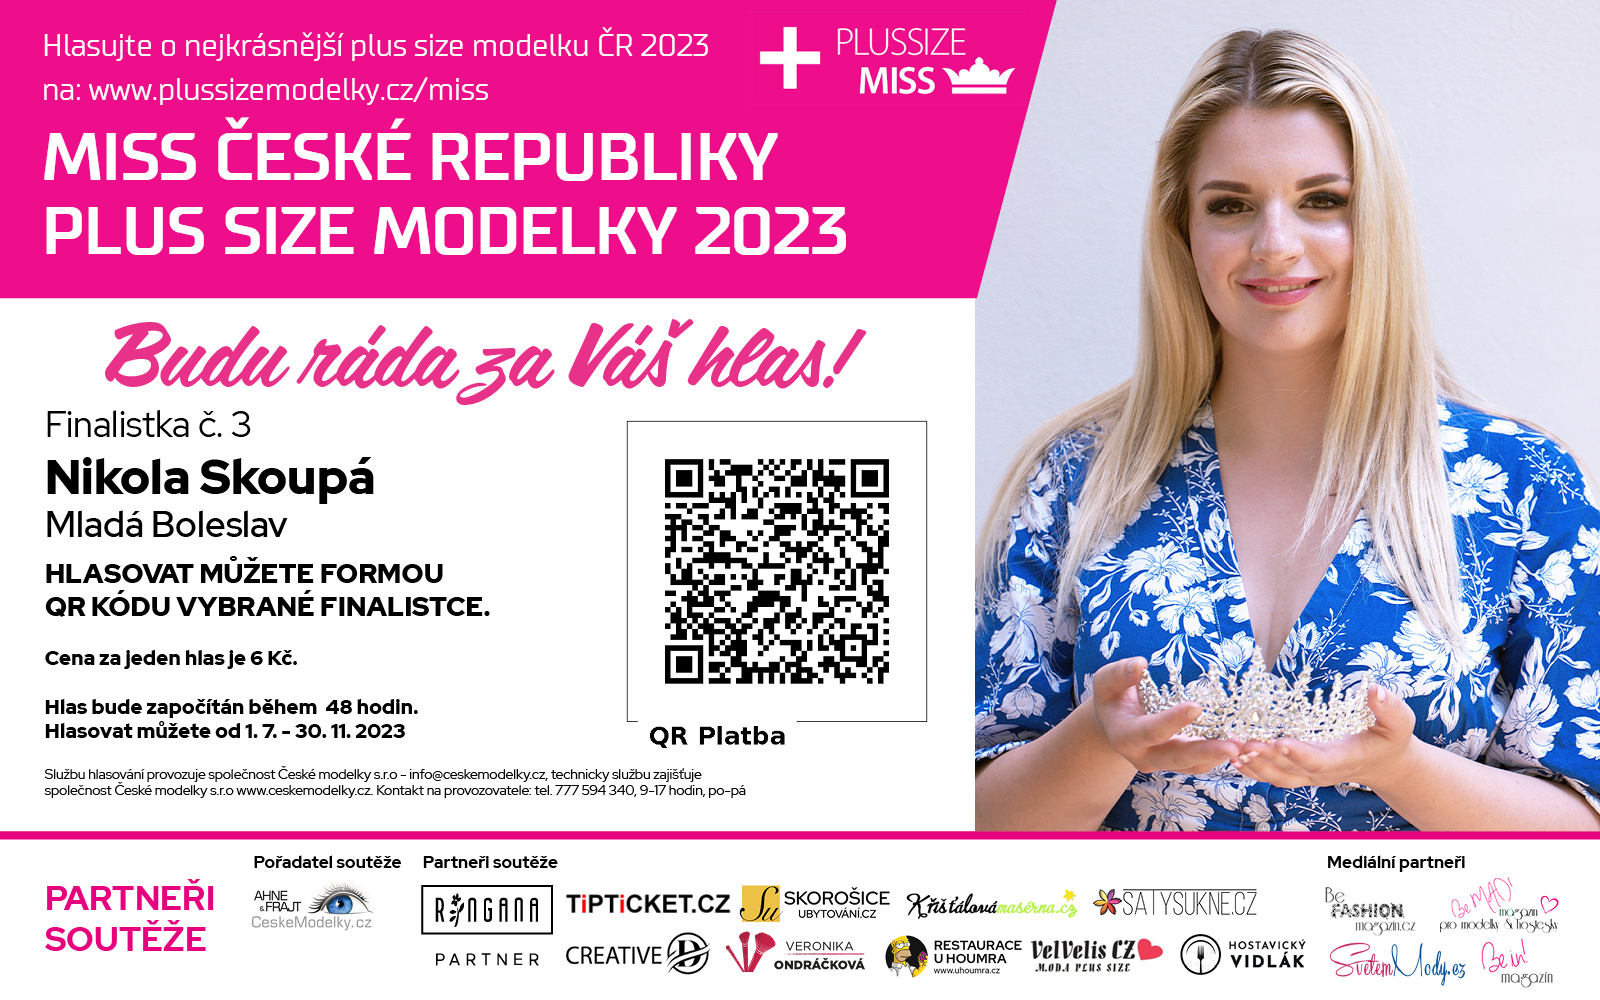 Nikola Skoup finalistka .3 soute Miss Plus size modelky R 2023